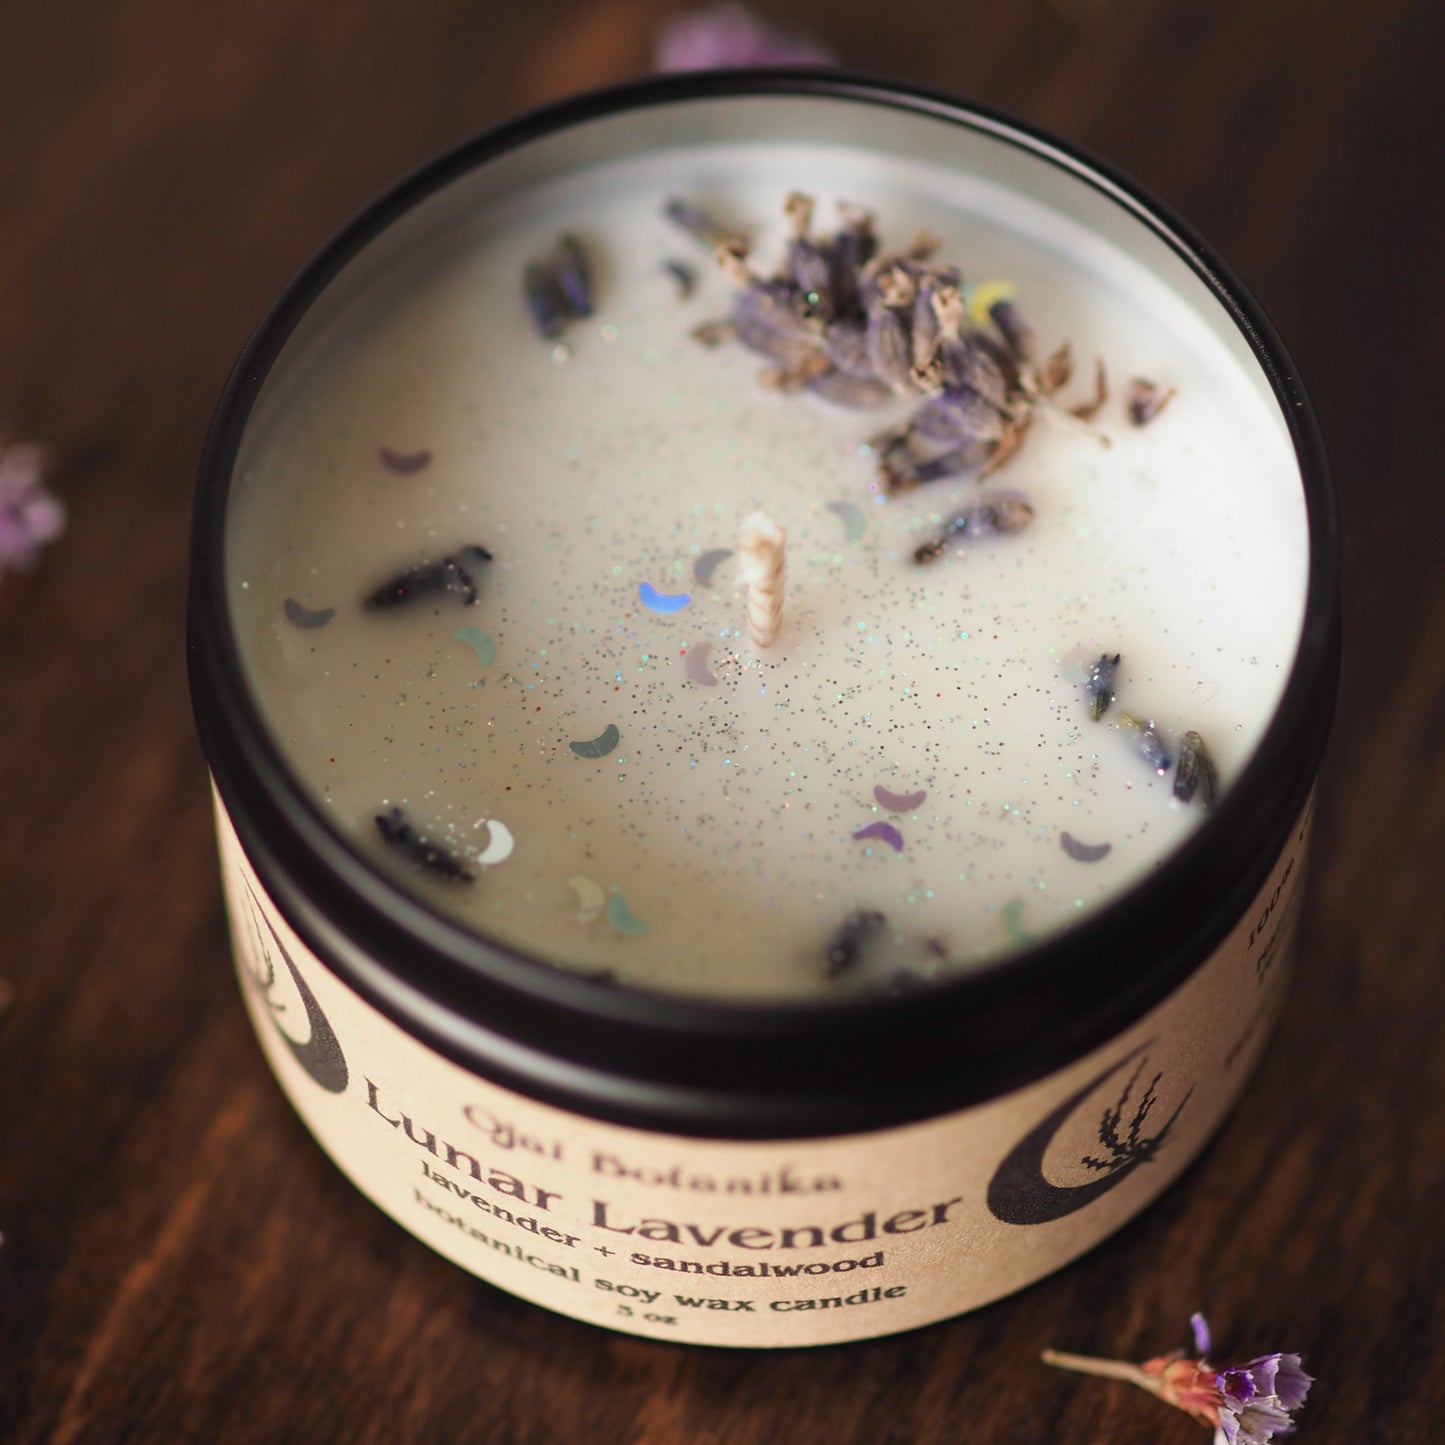 Lunar Lavender - Lavender & Sandalwood - Botanical Soy Candle